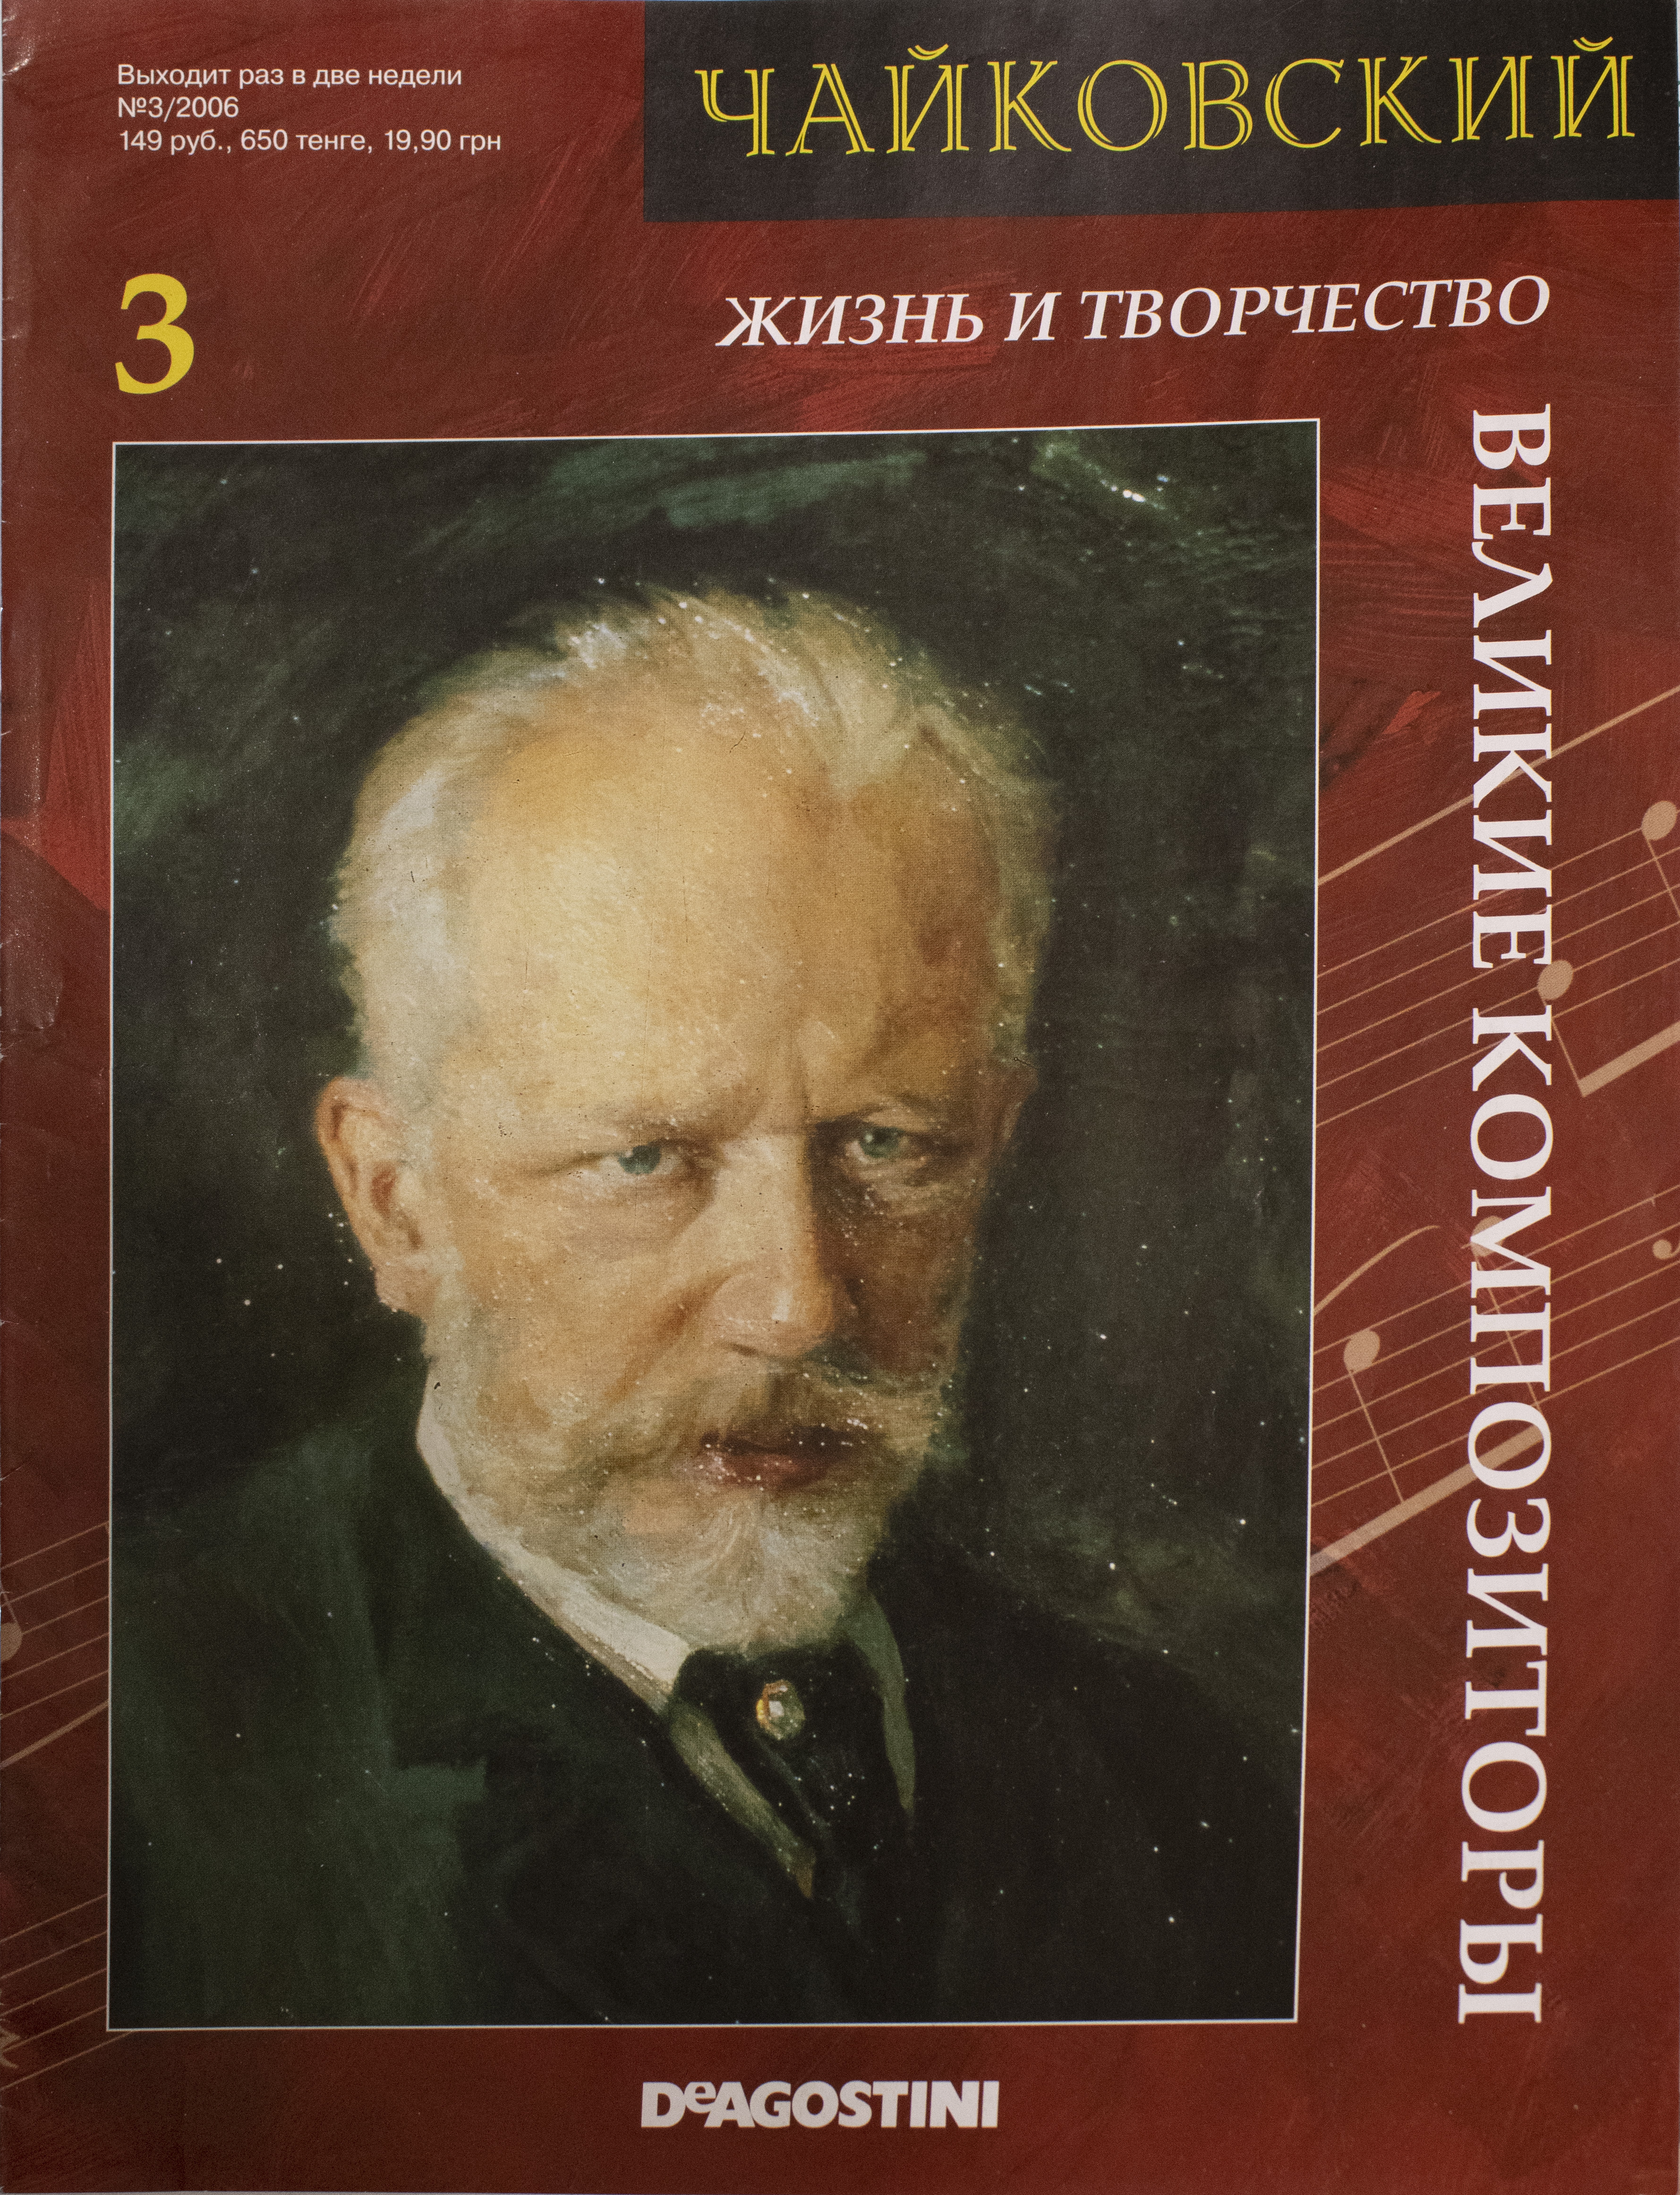 Книга великие композиторы. Чайковский композитор. Чайковский портрет.